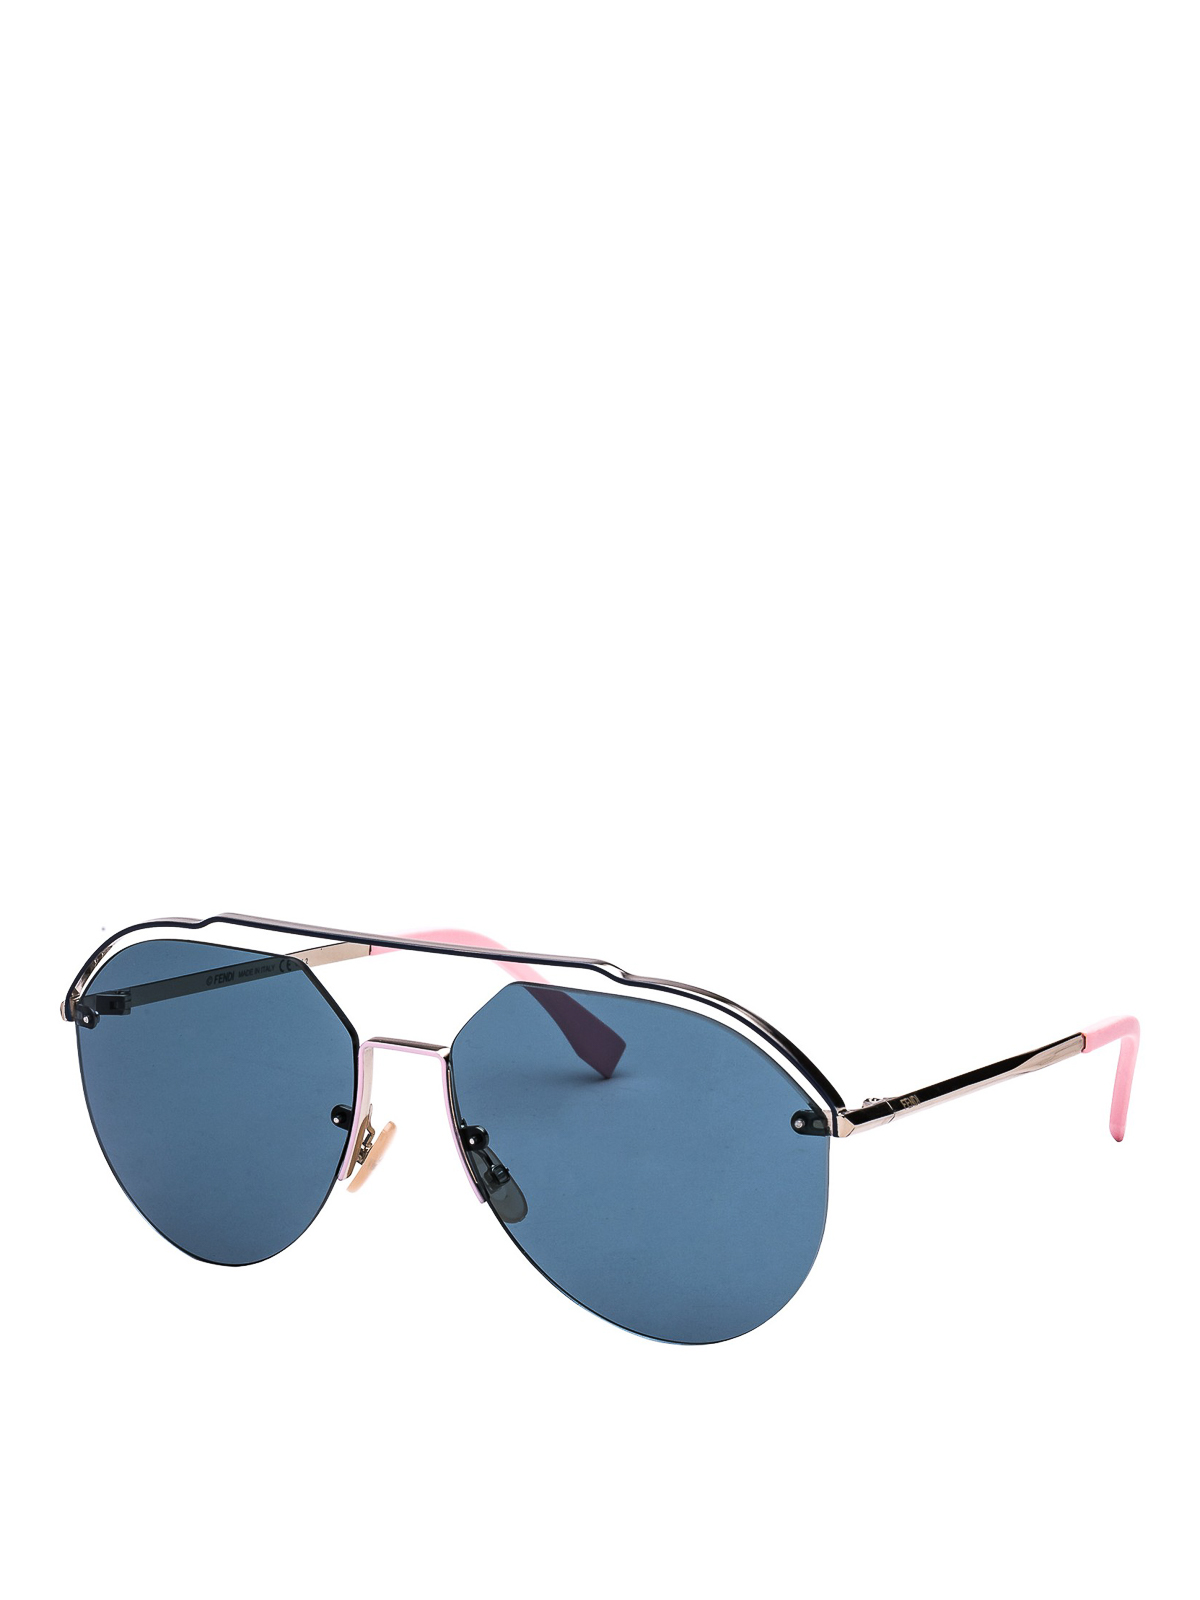 fendi men's sunglasses 2019